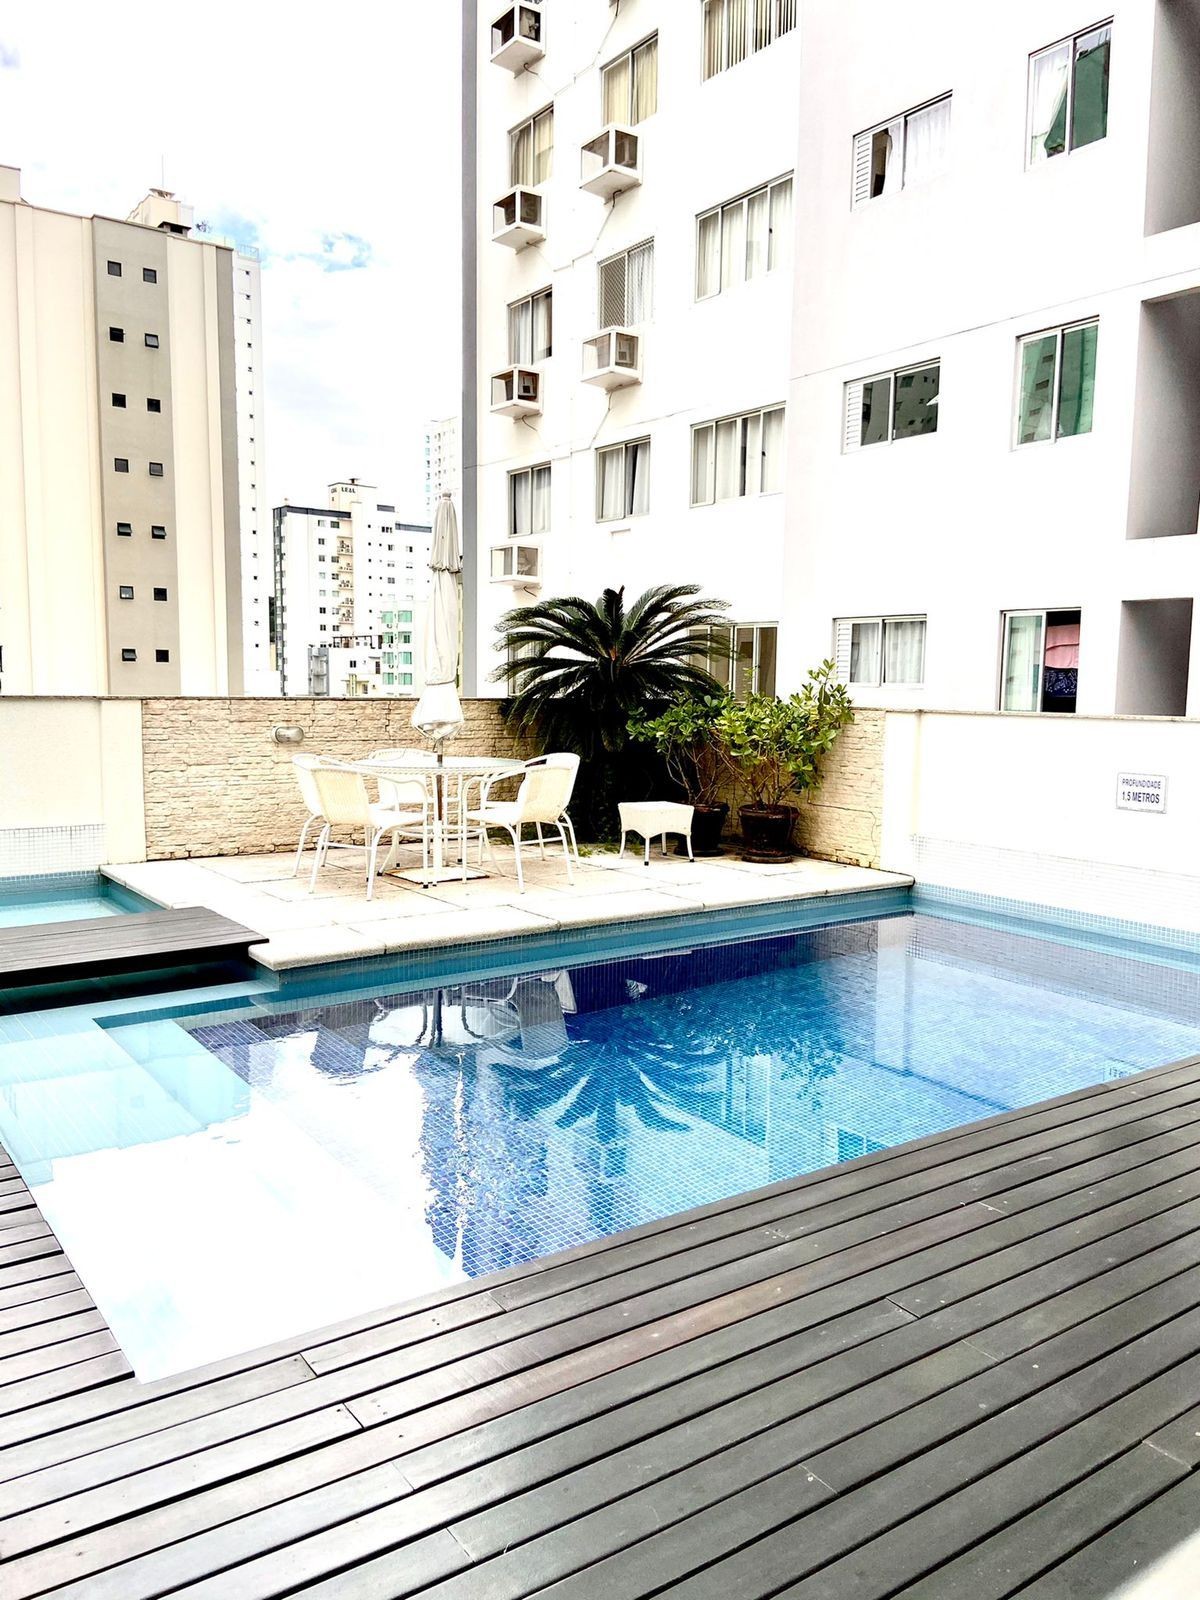 Ótimo Apartamento Mobiliado e Equipado Com 3 Suítes Localizado em Balneário Camboriú-SC